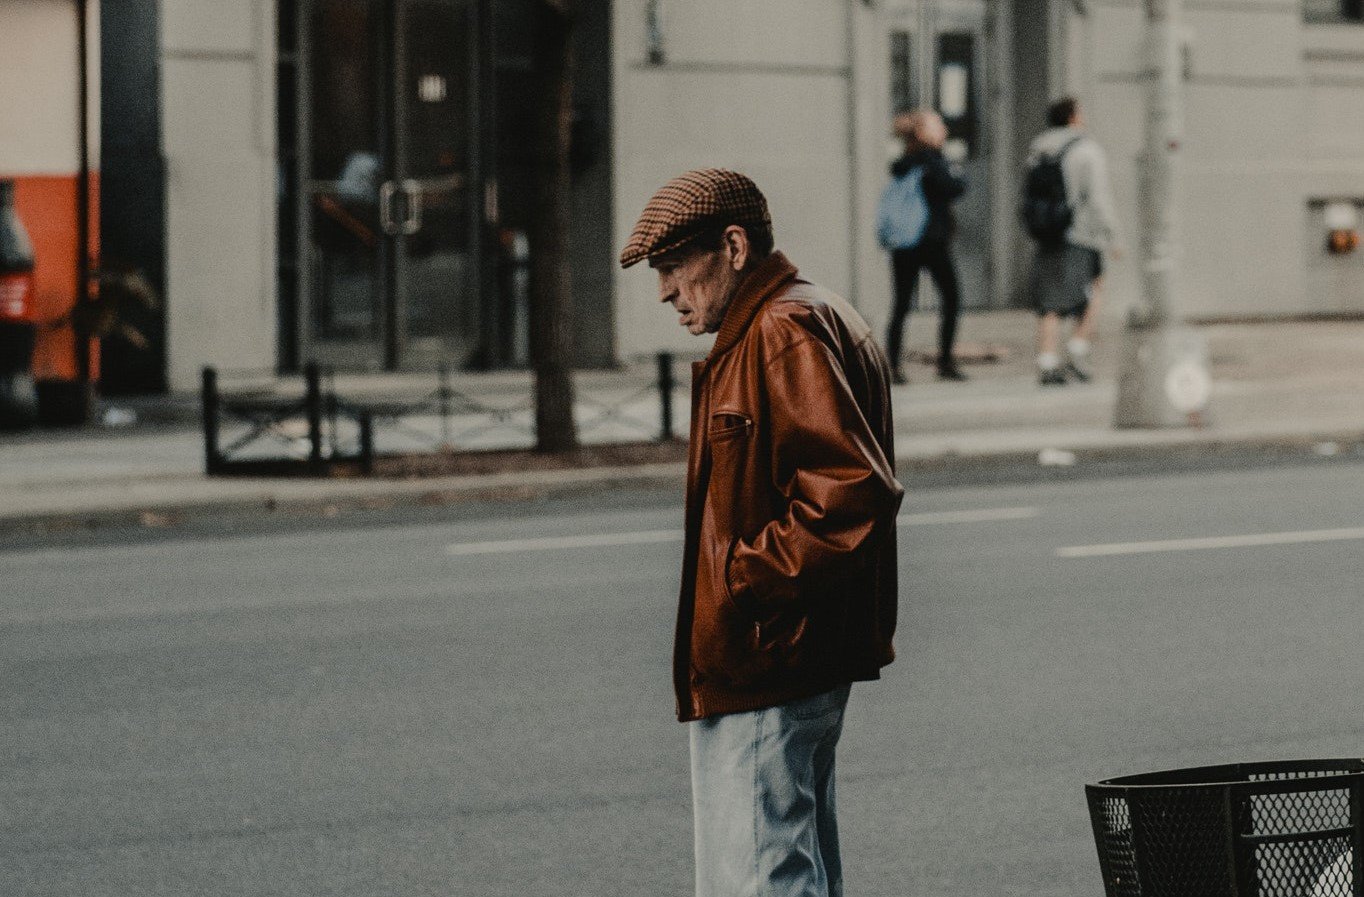 Ein alter Mann verkaufte etwas auf der anderen Straßenseite. | Quelle: Pexels